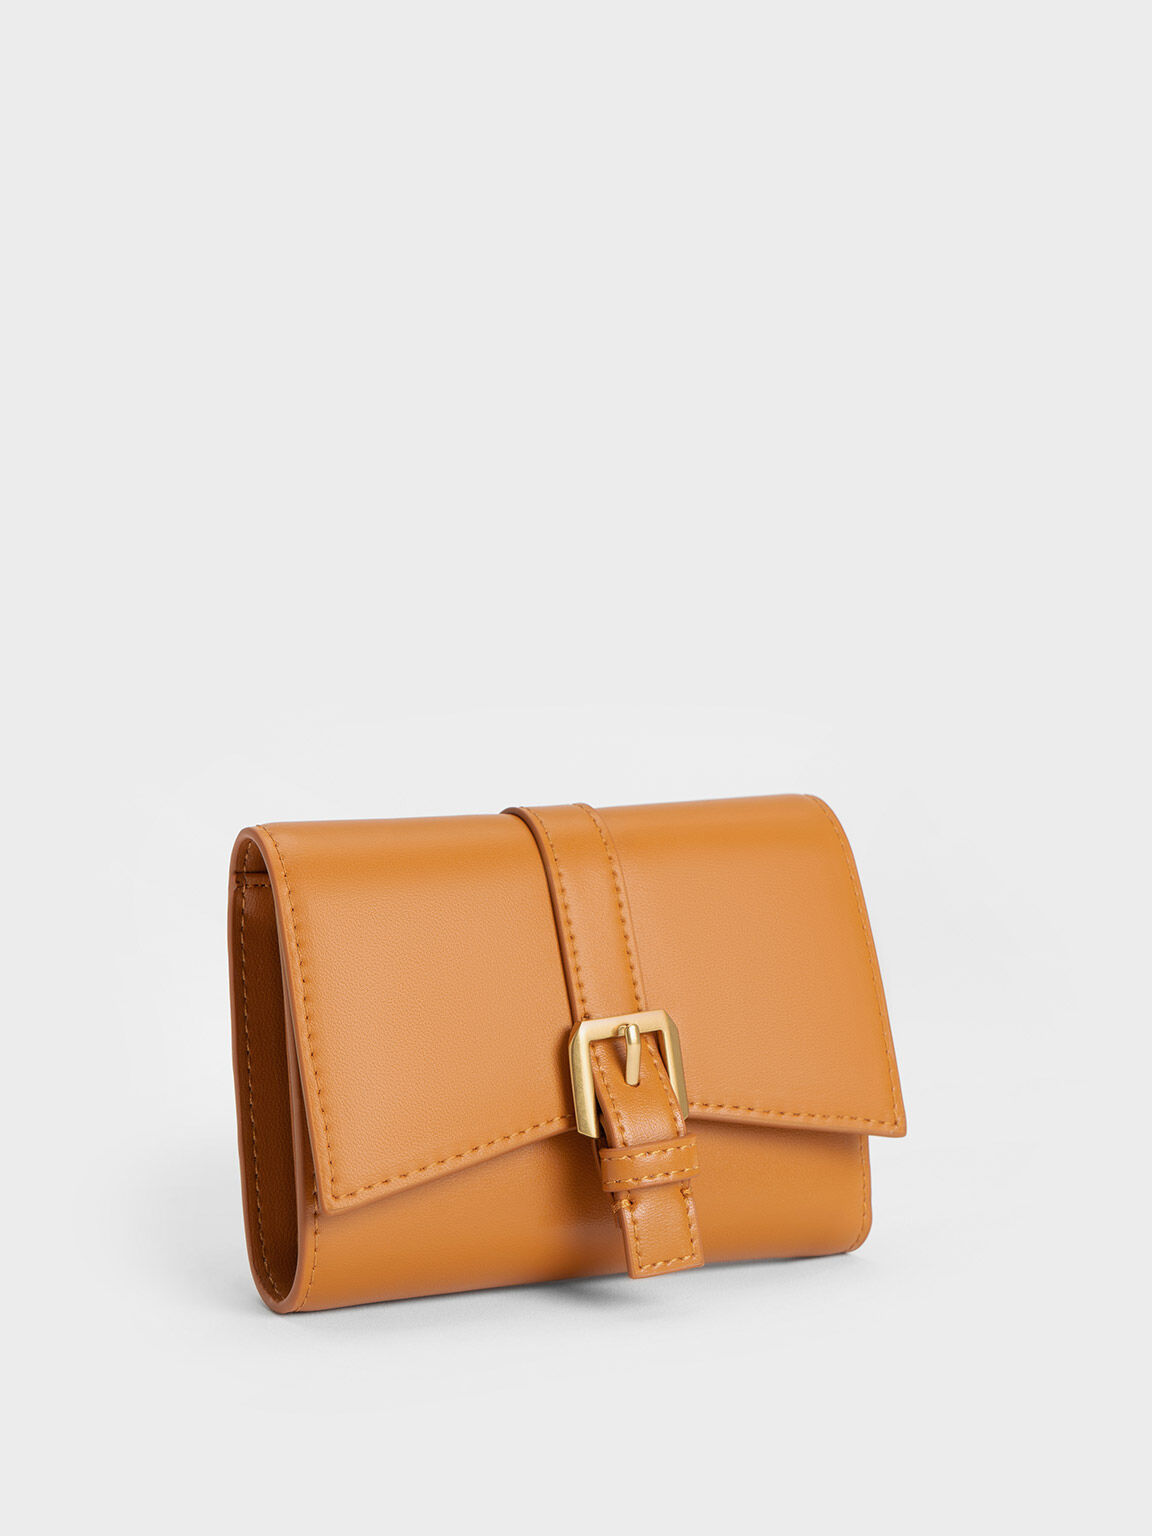 Annelise Belted Wallet, Orange, hi-res